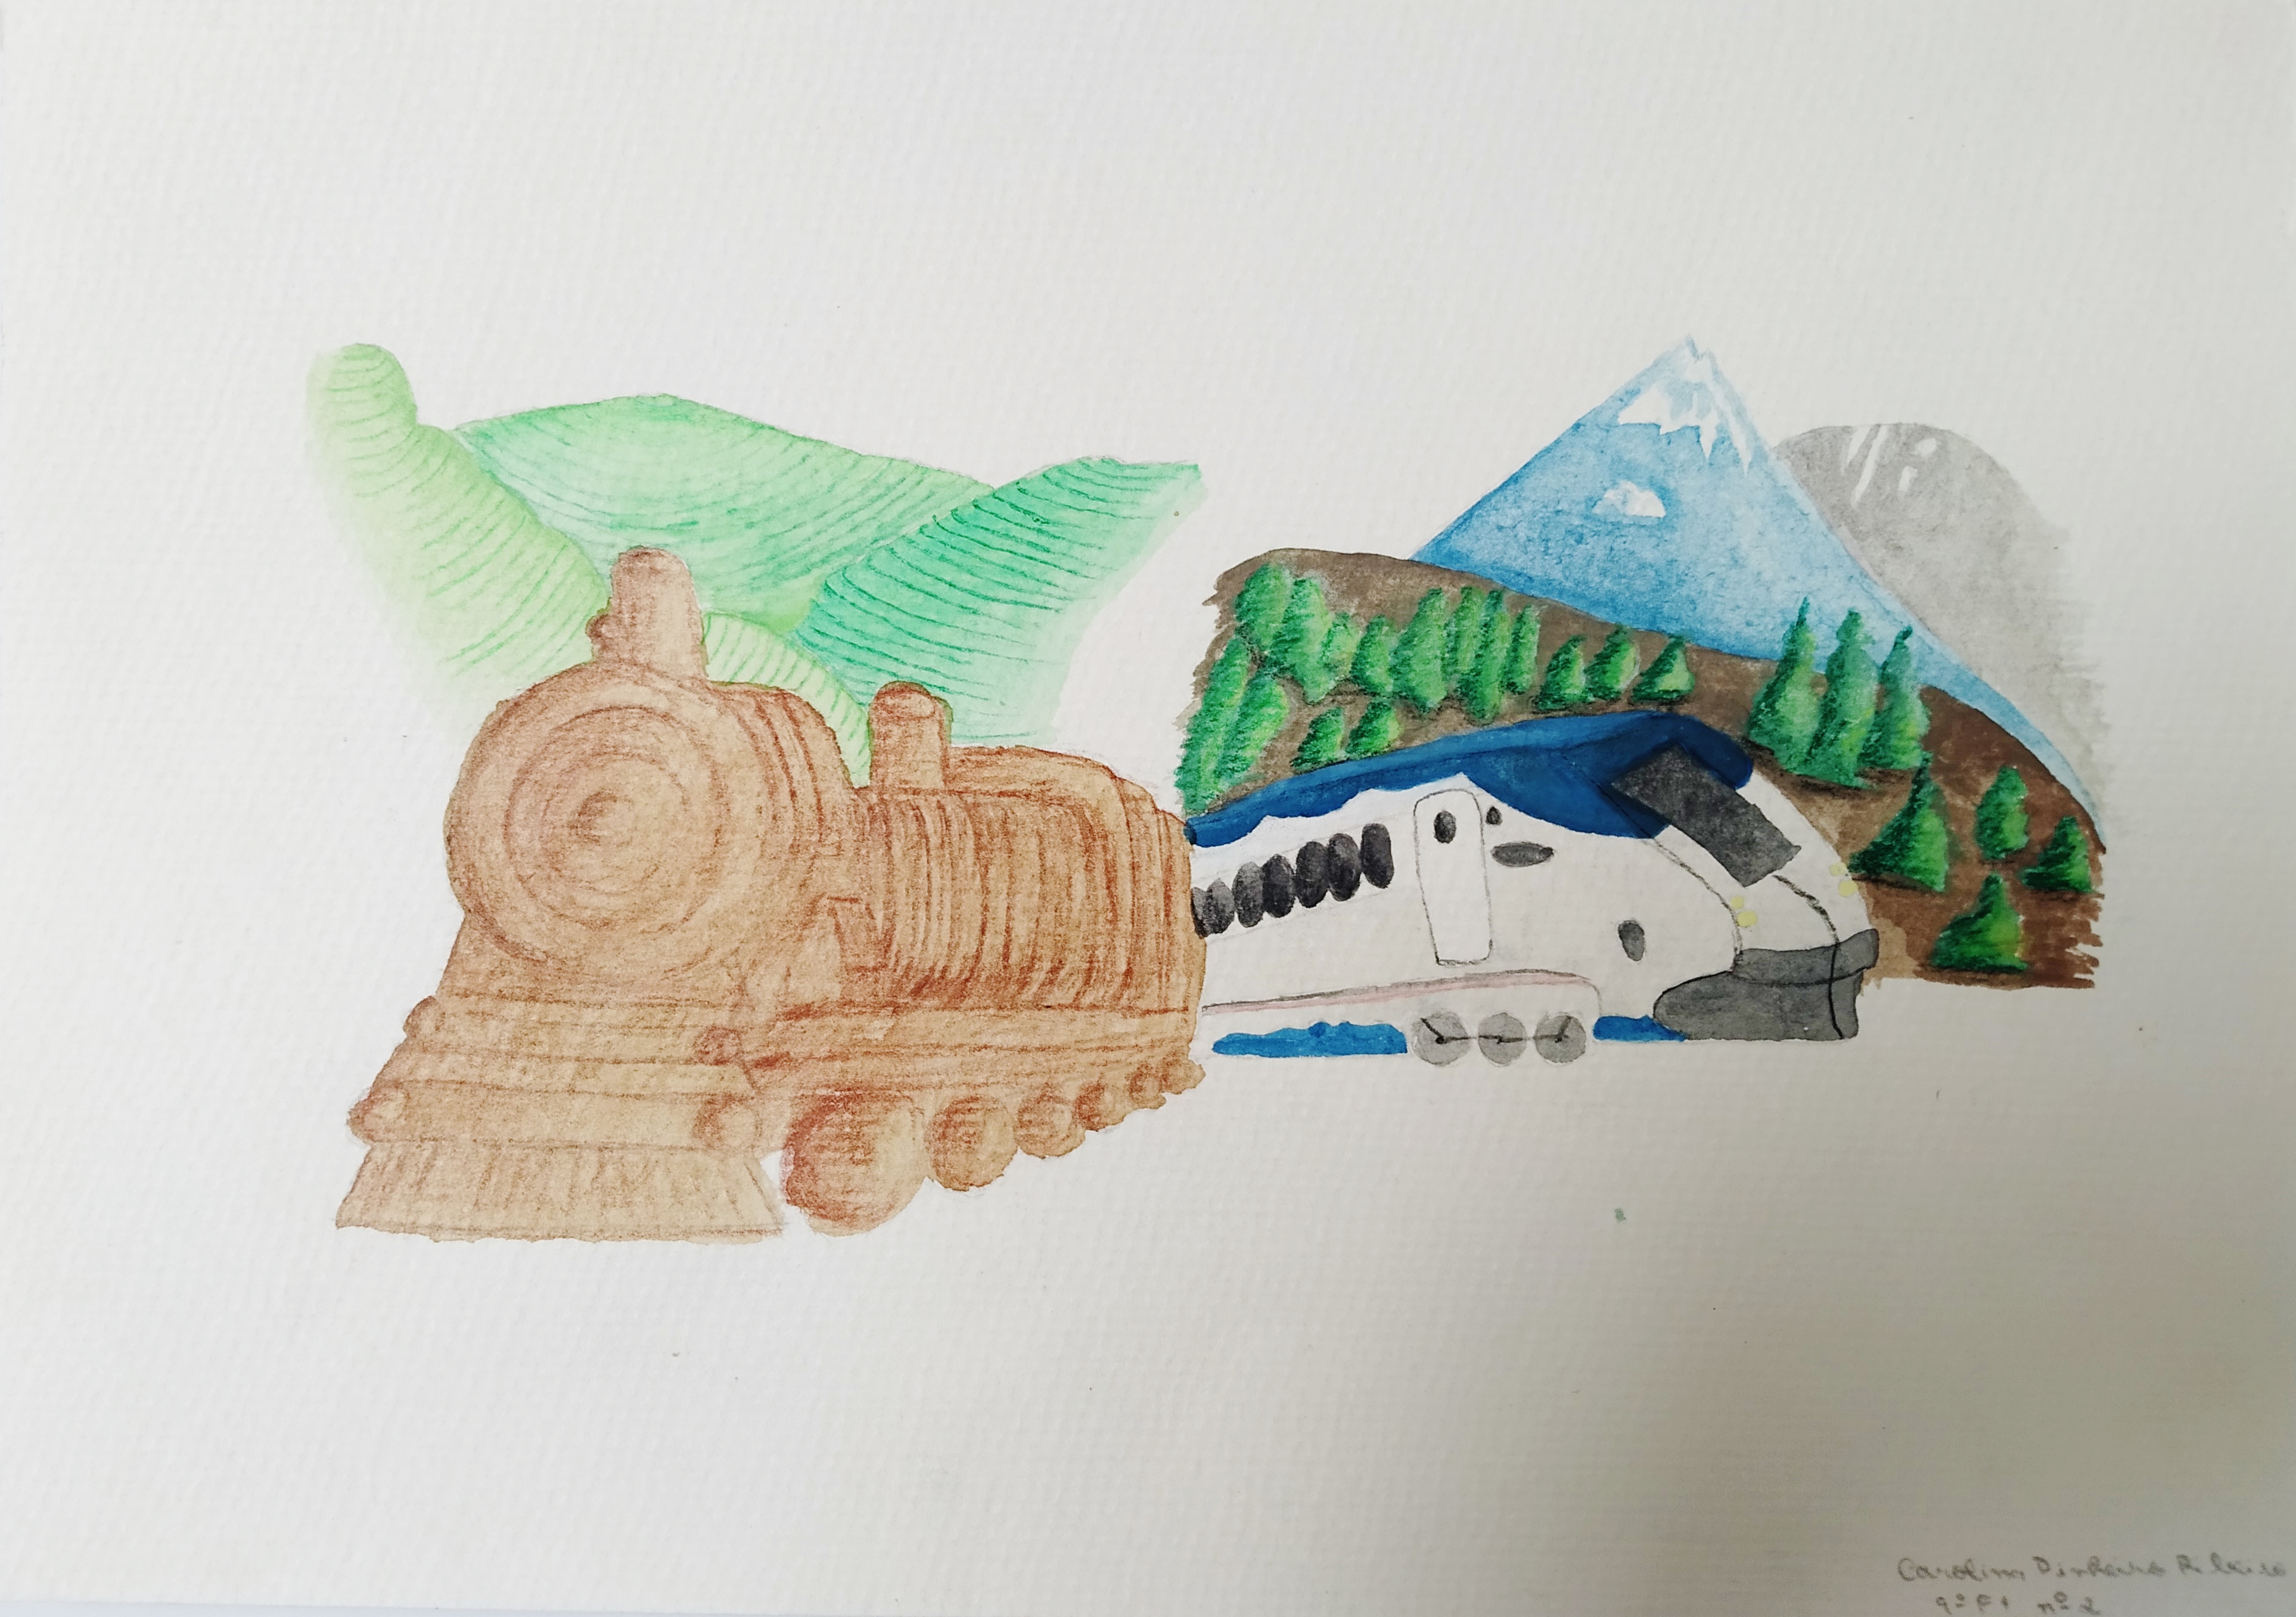 segundo prémio do primeiro concurso de desenho sobre o transporte ferroviário